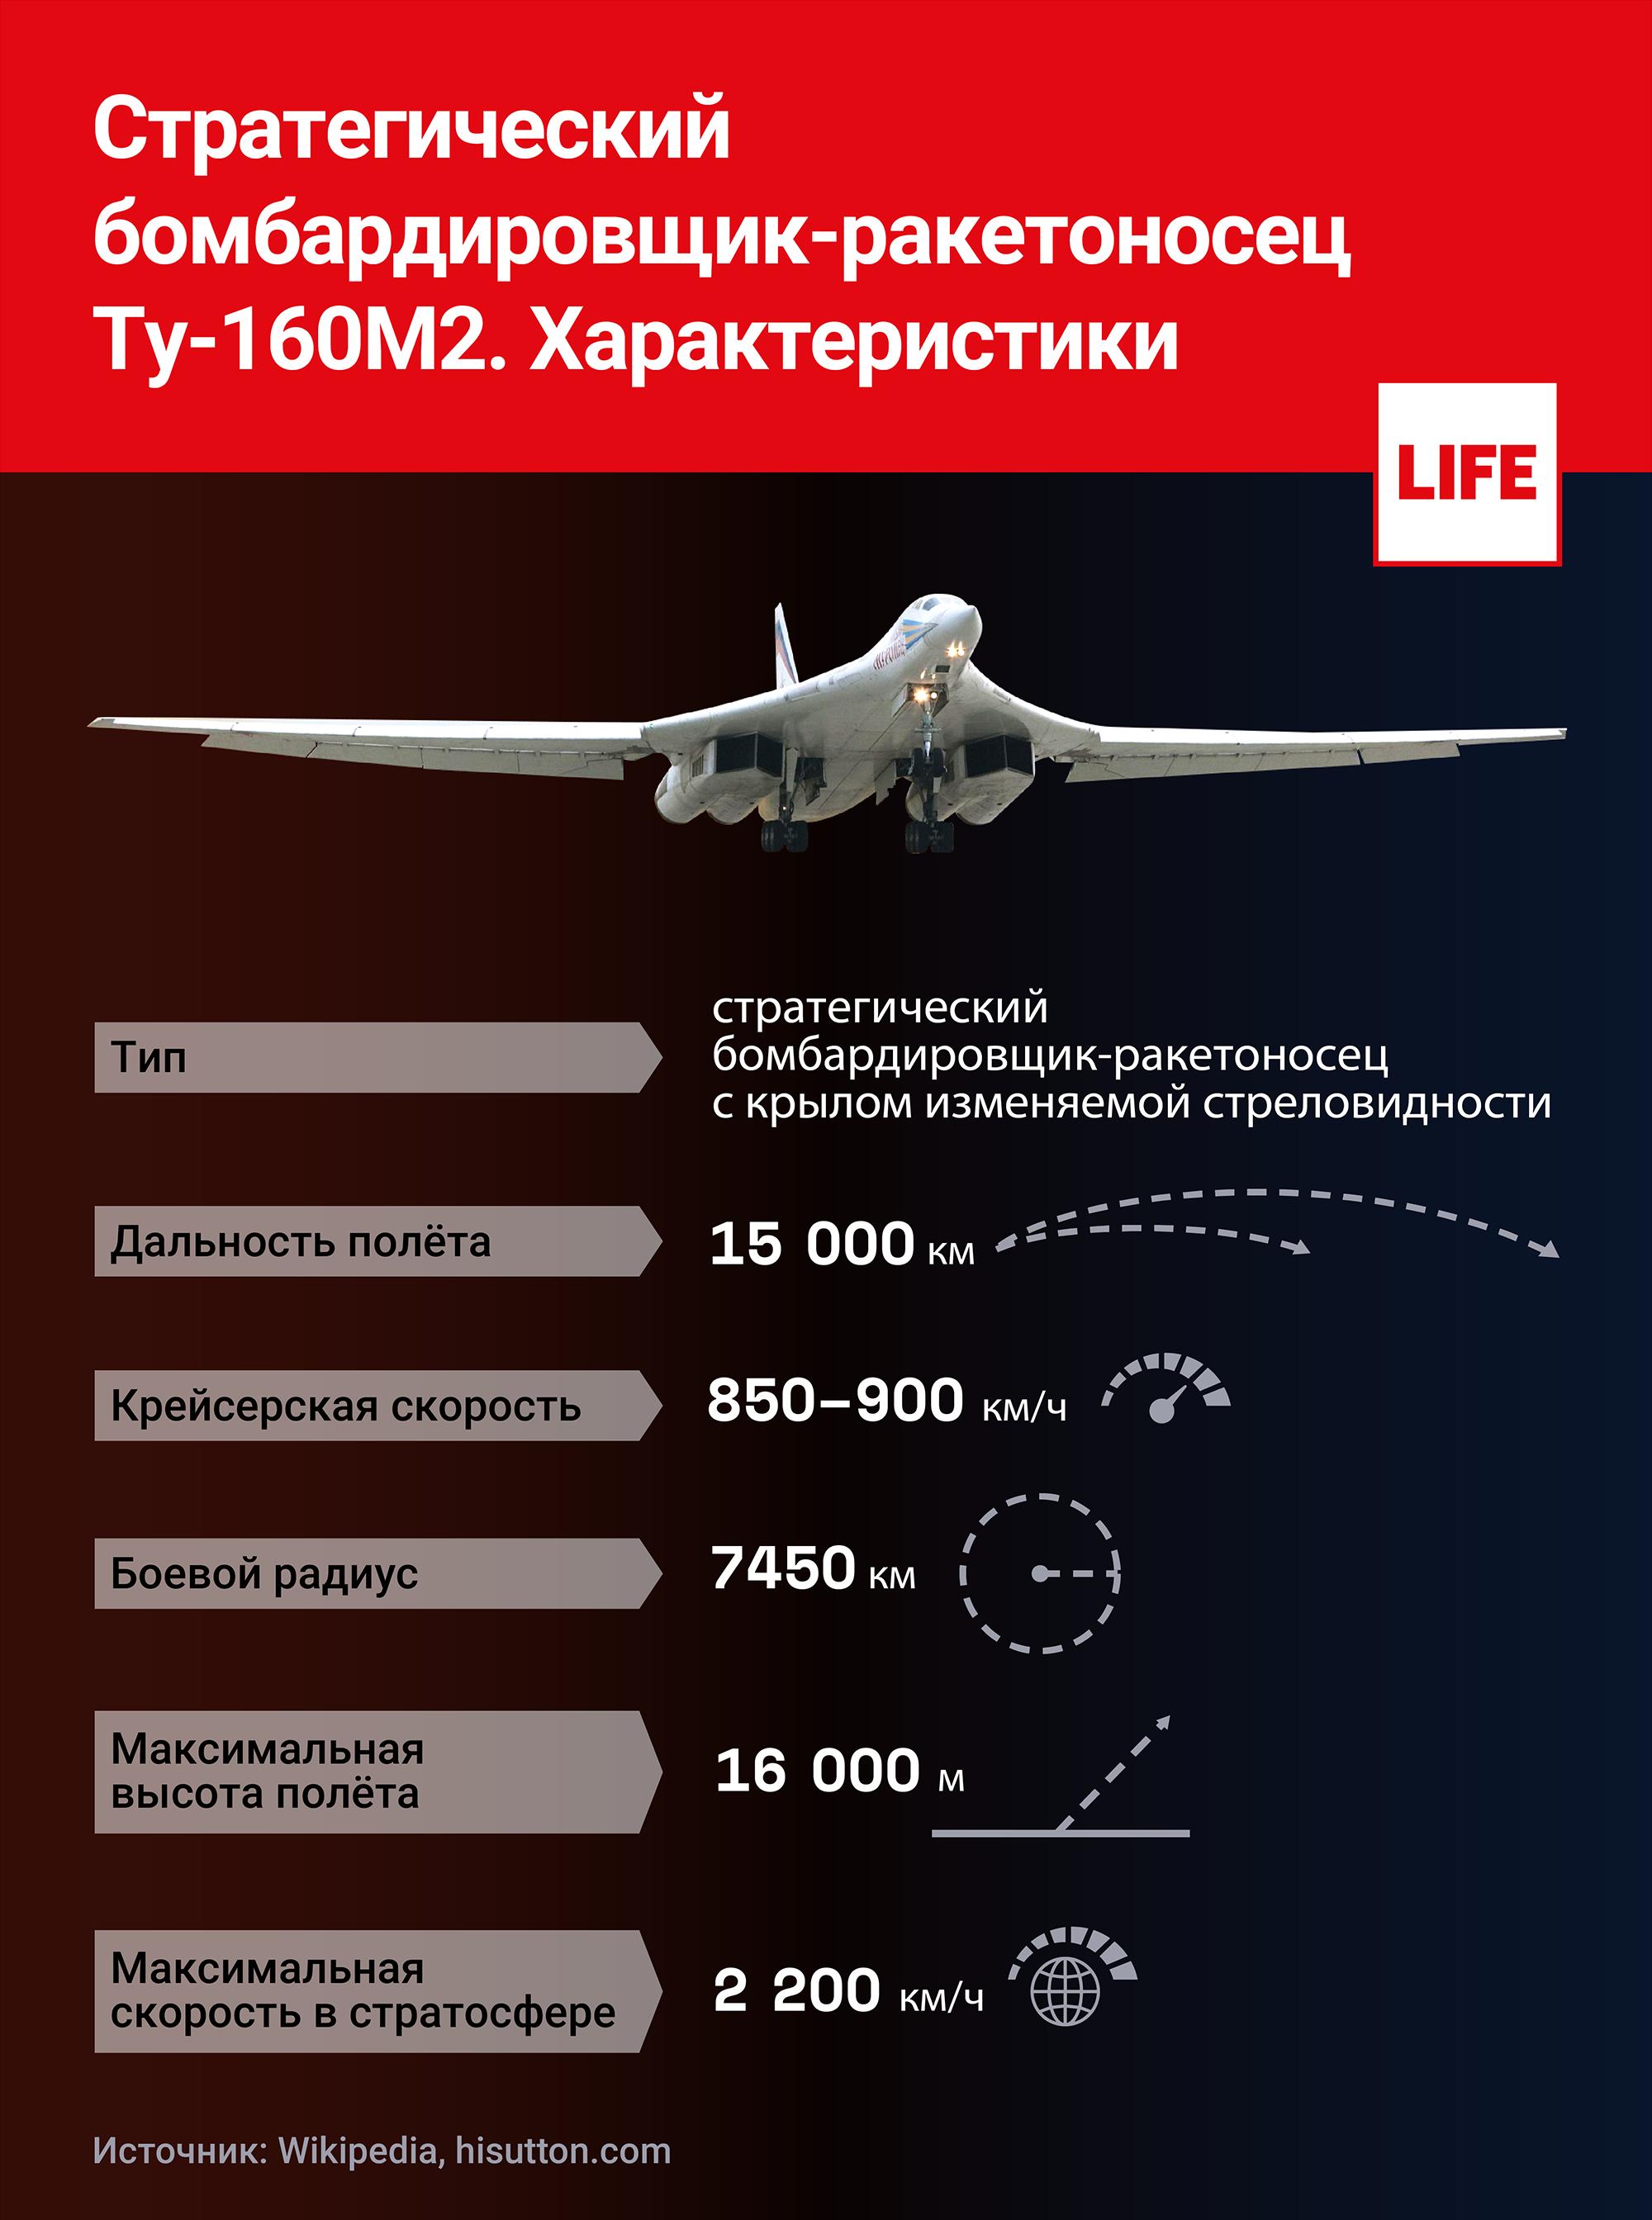 Название какой стратегической высоты. Ту-160м. Белый лебедь бомбардировщик ту-160 характеристики. Максимальная скорость ту-160 белый лебедь. ТТХ ту 160м2 белый лебедь.